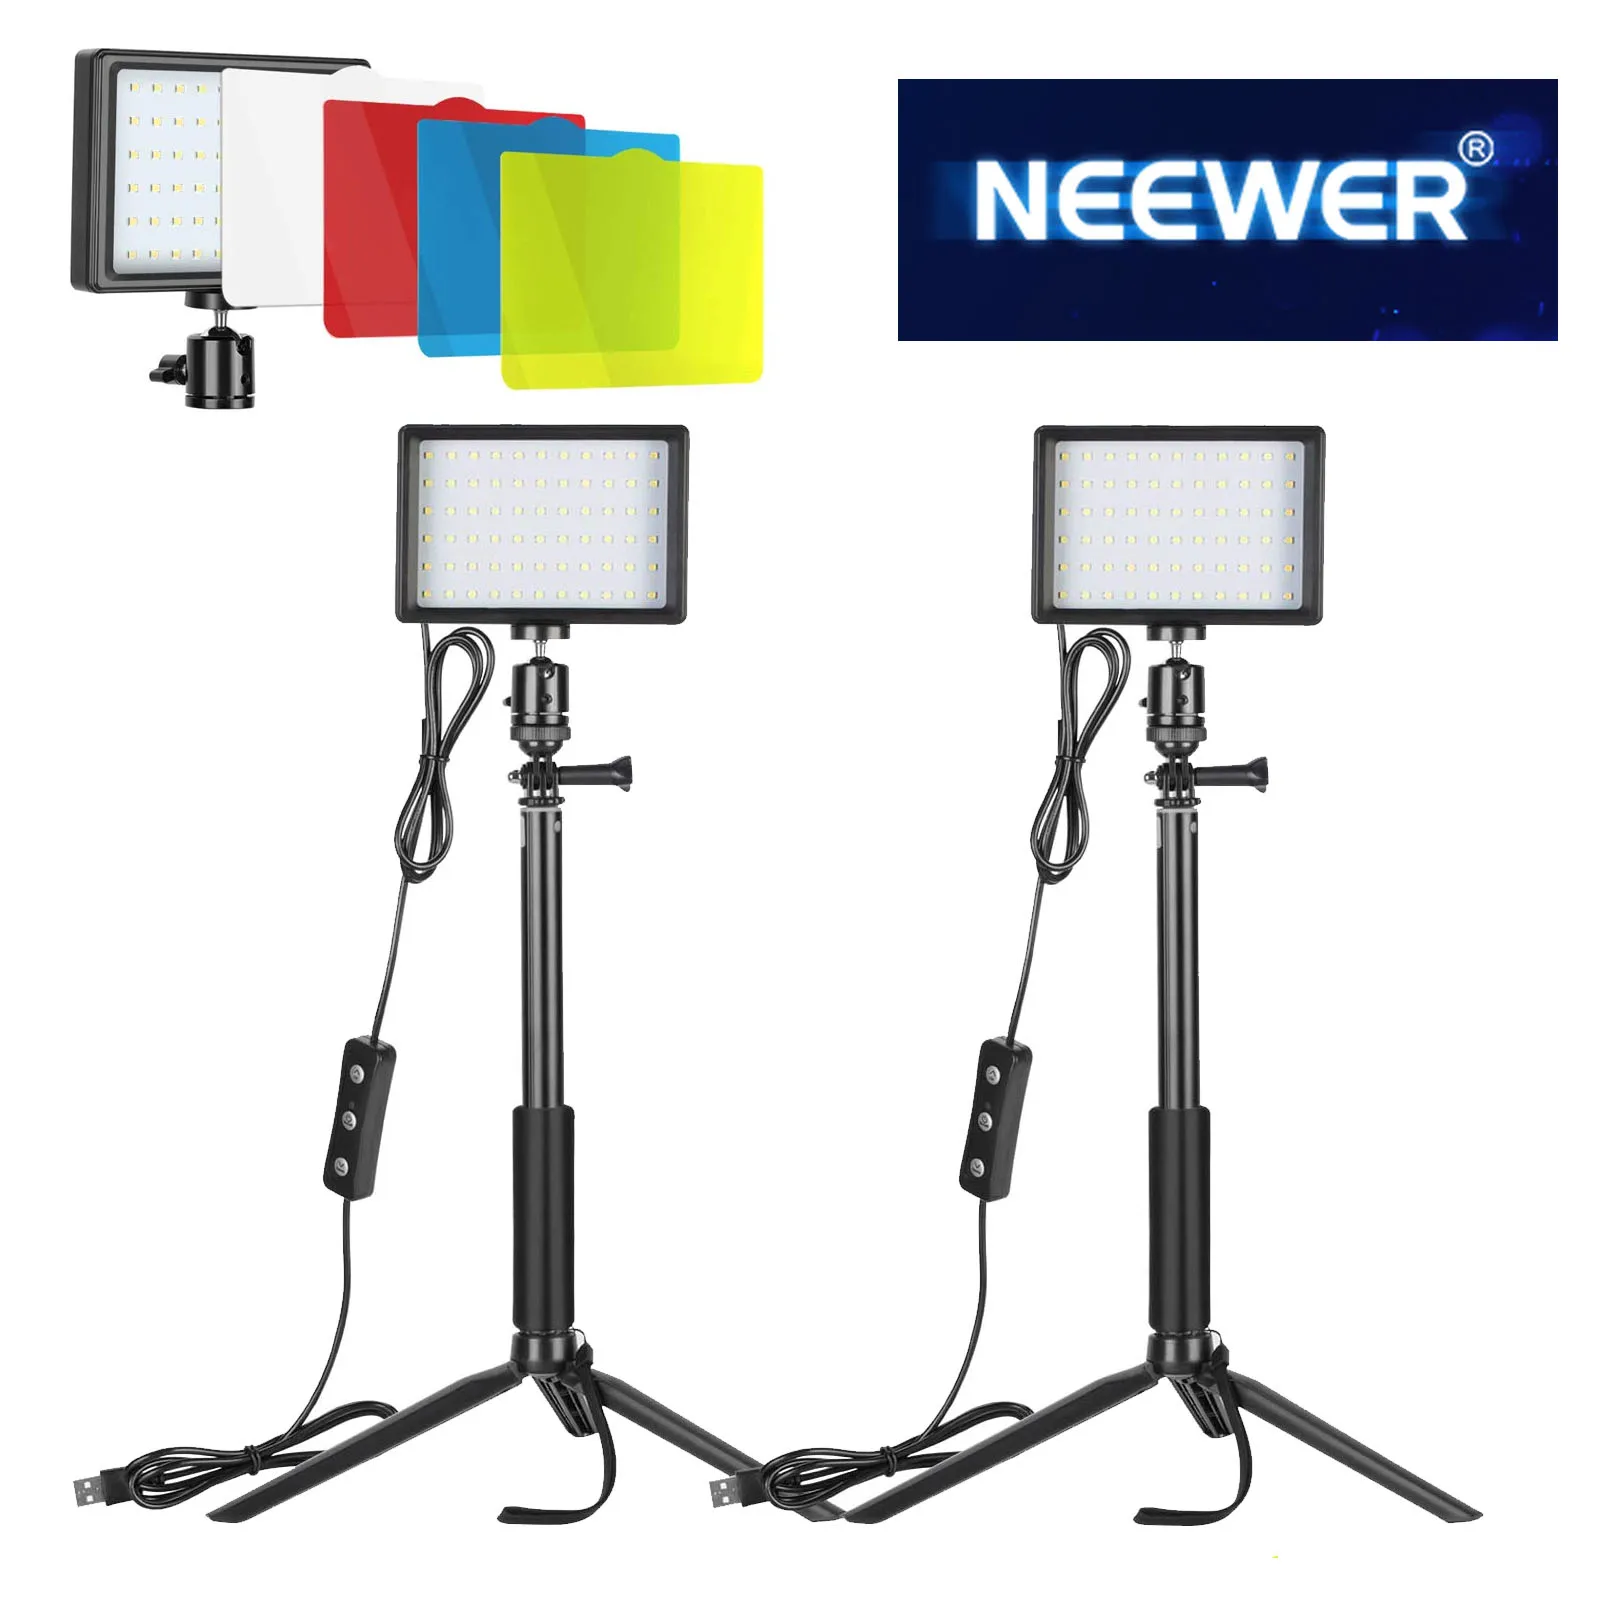 Neewer Dimmbare USB RGB LED Video Licht 2-Pack mit Fernbedienung, stativ und Versenkbare Stange für Zoom/Video Konferenz Beleuchtung